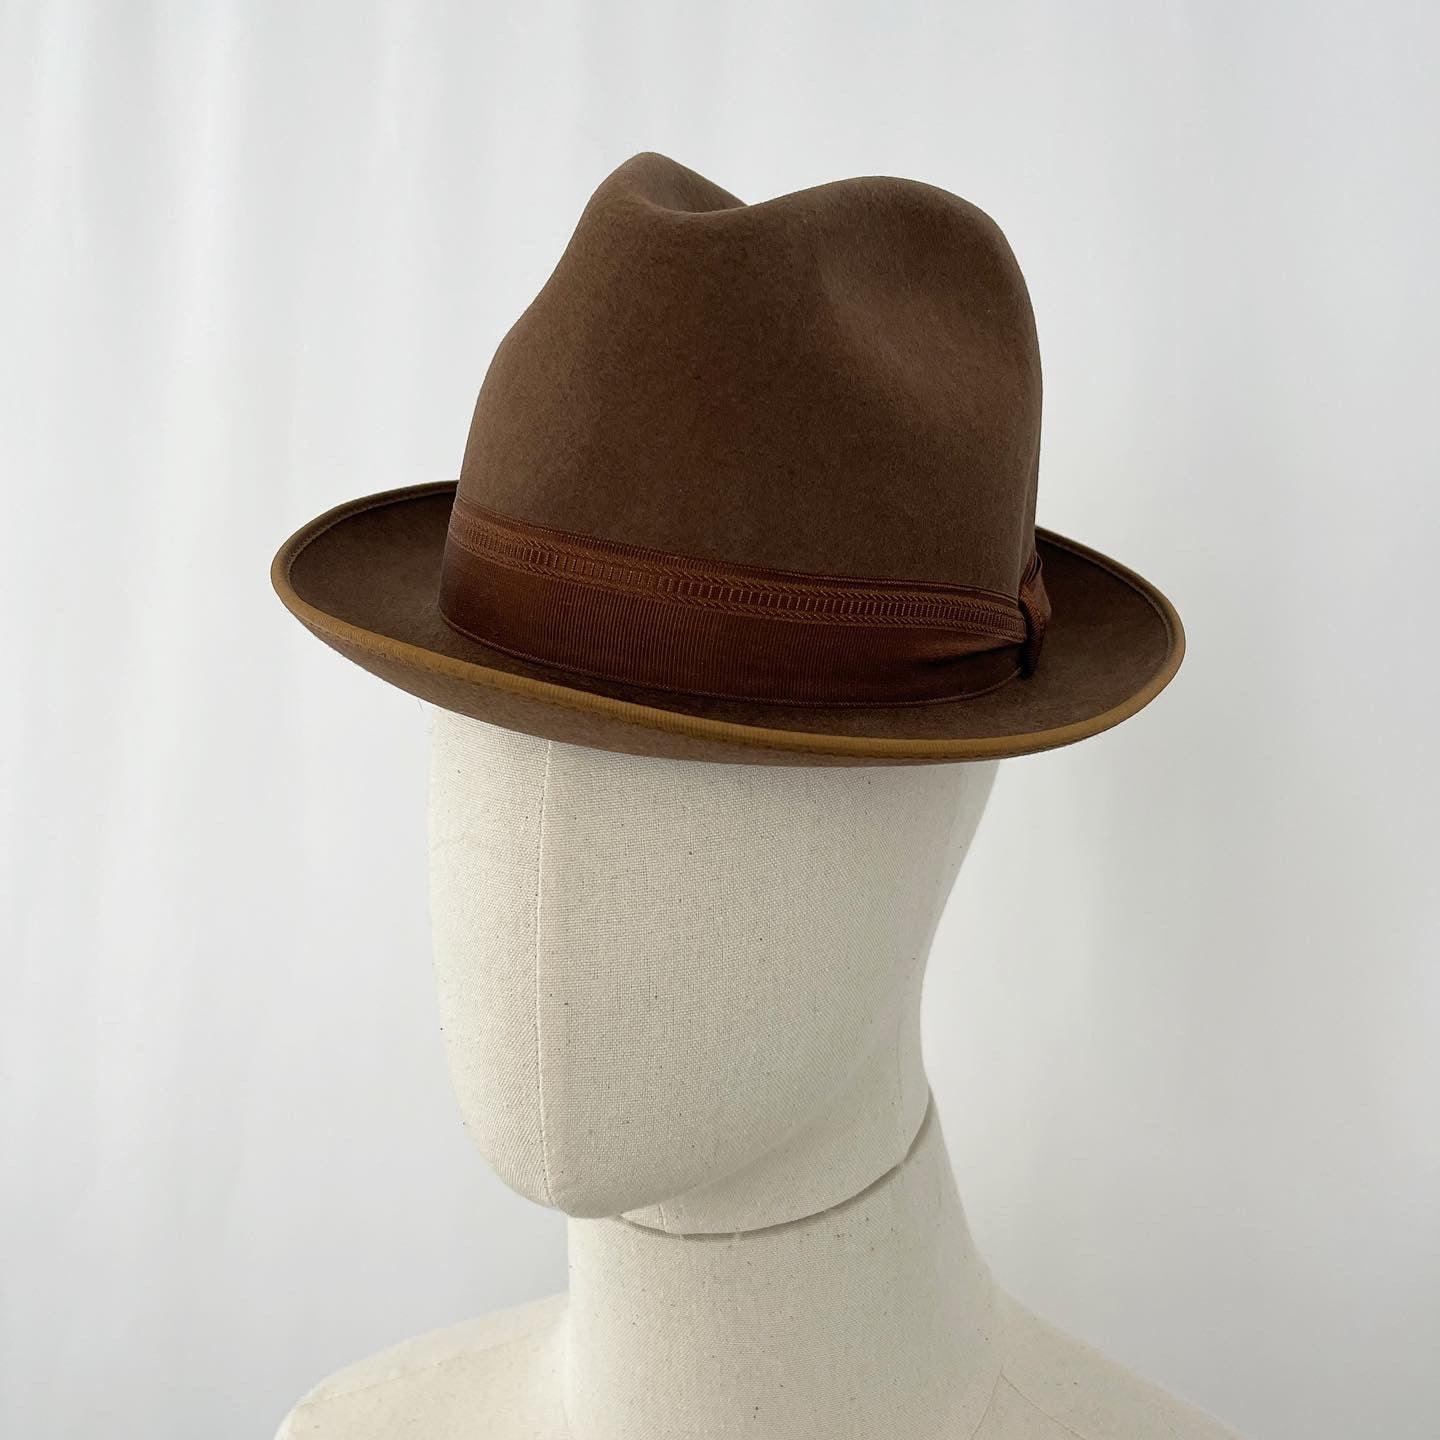 ELEGANCE - ELEGANCE Vintage Hat - AVVIIVVA.COM